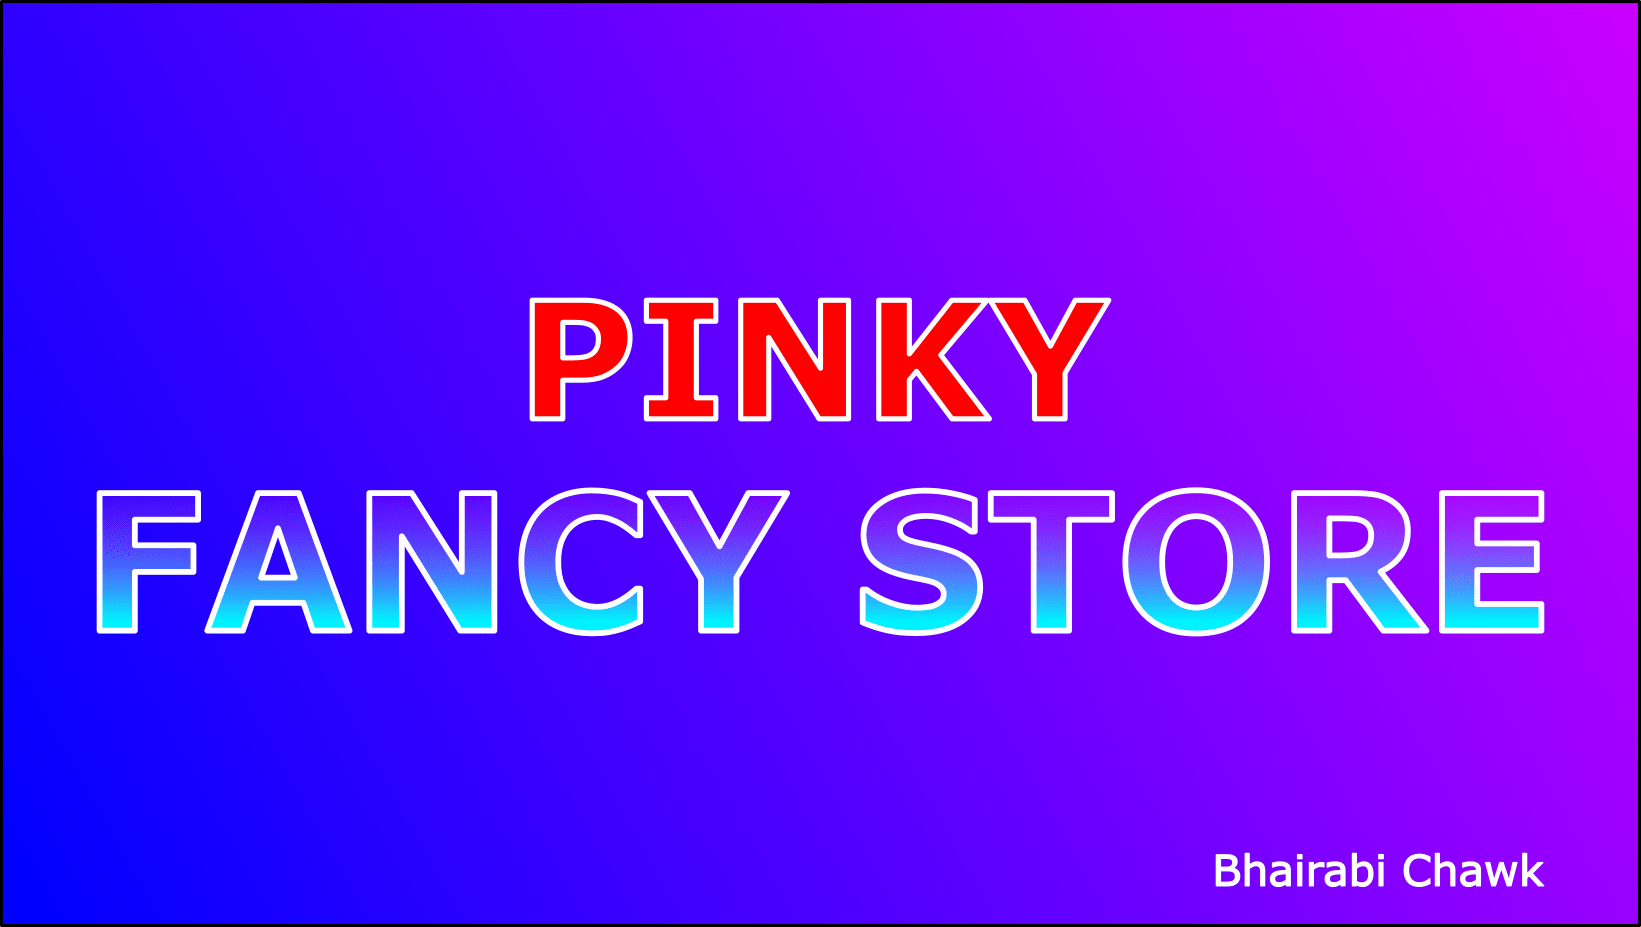 Pinky fancy store